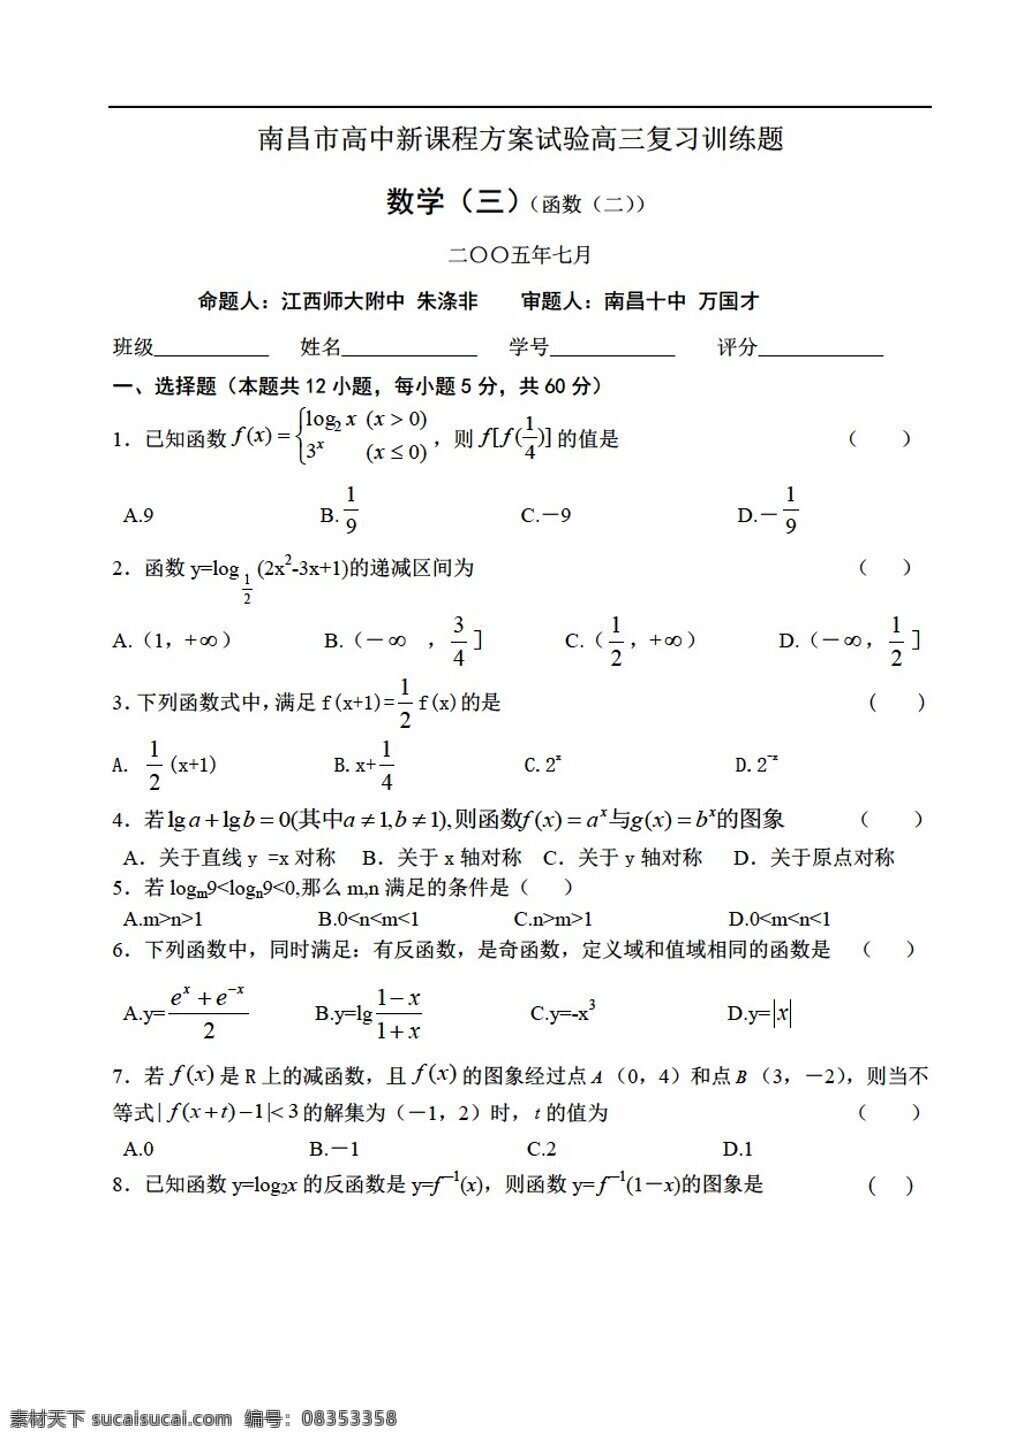 数学 人教 版 南昌市 新 课程 方案 试验 复习 训练 题 函数 人教版 第一册上 试卷